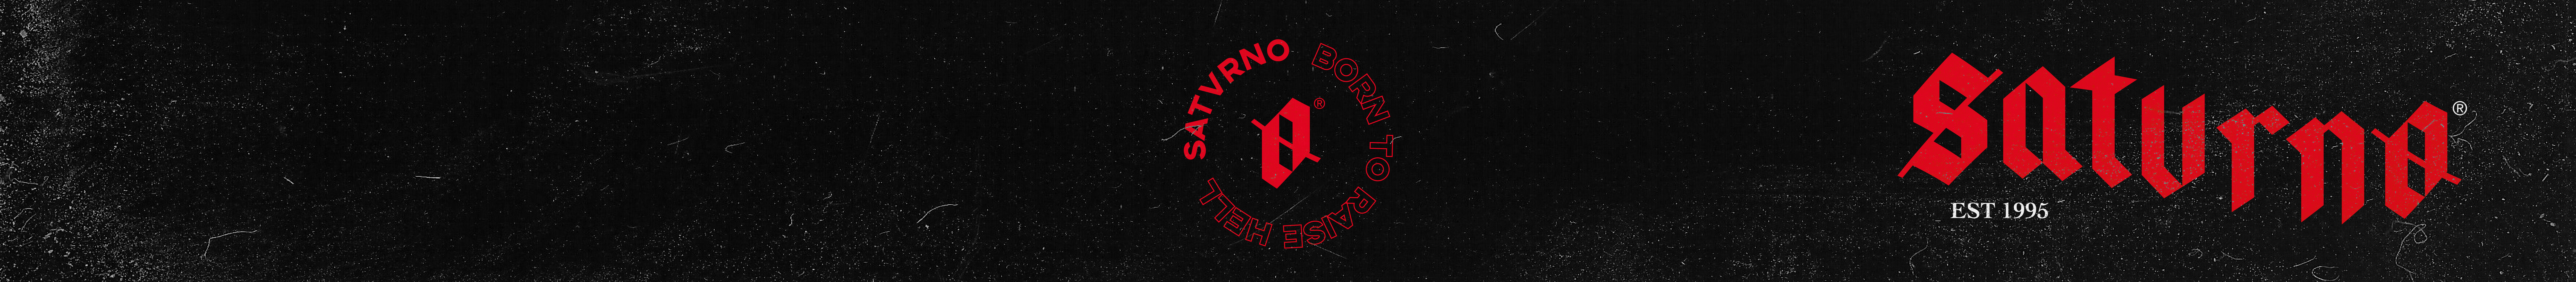 Satvrno Art's profile banner